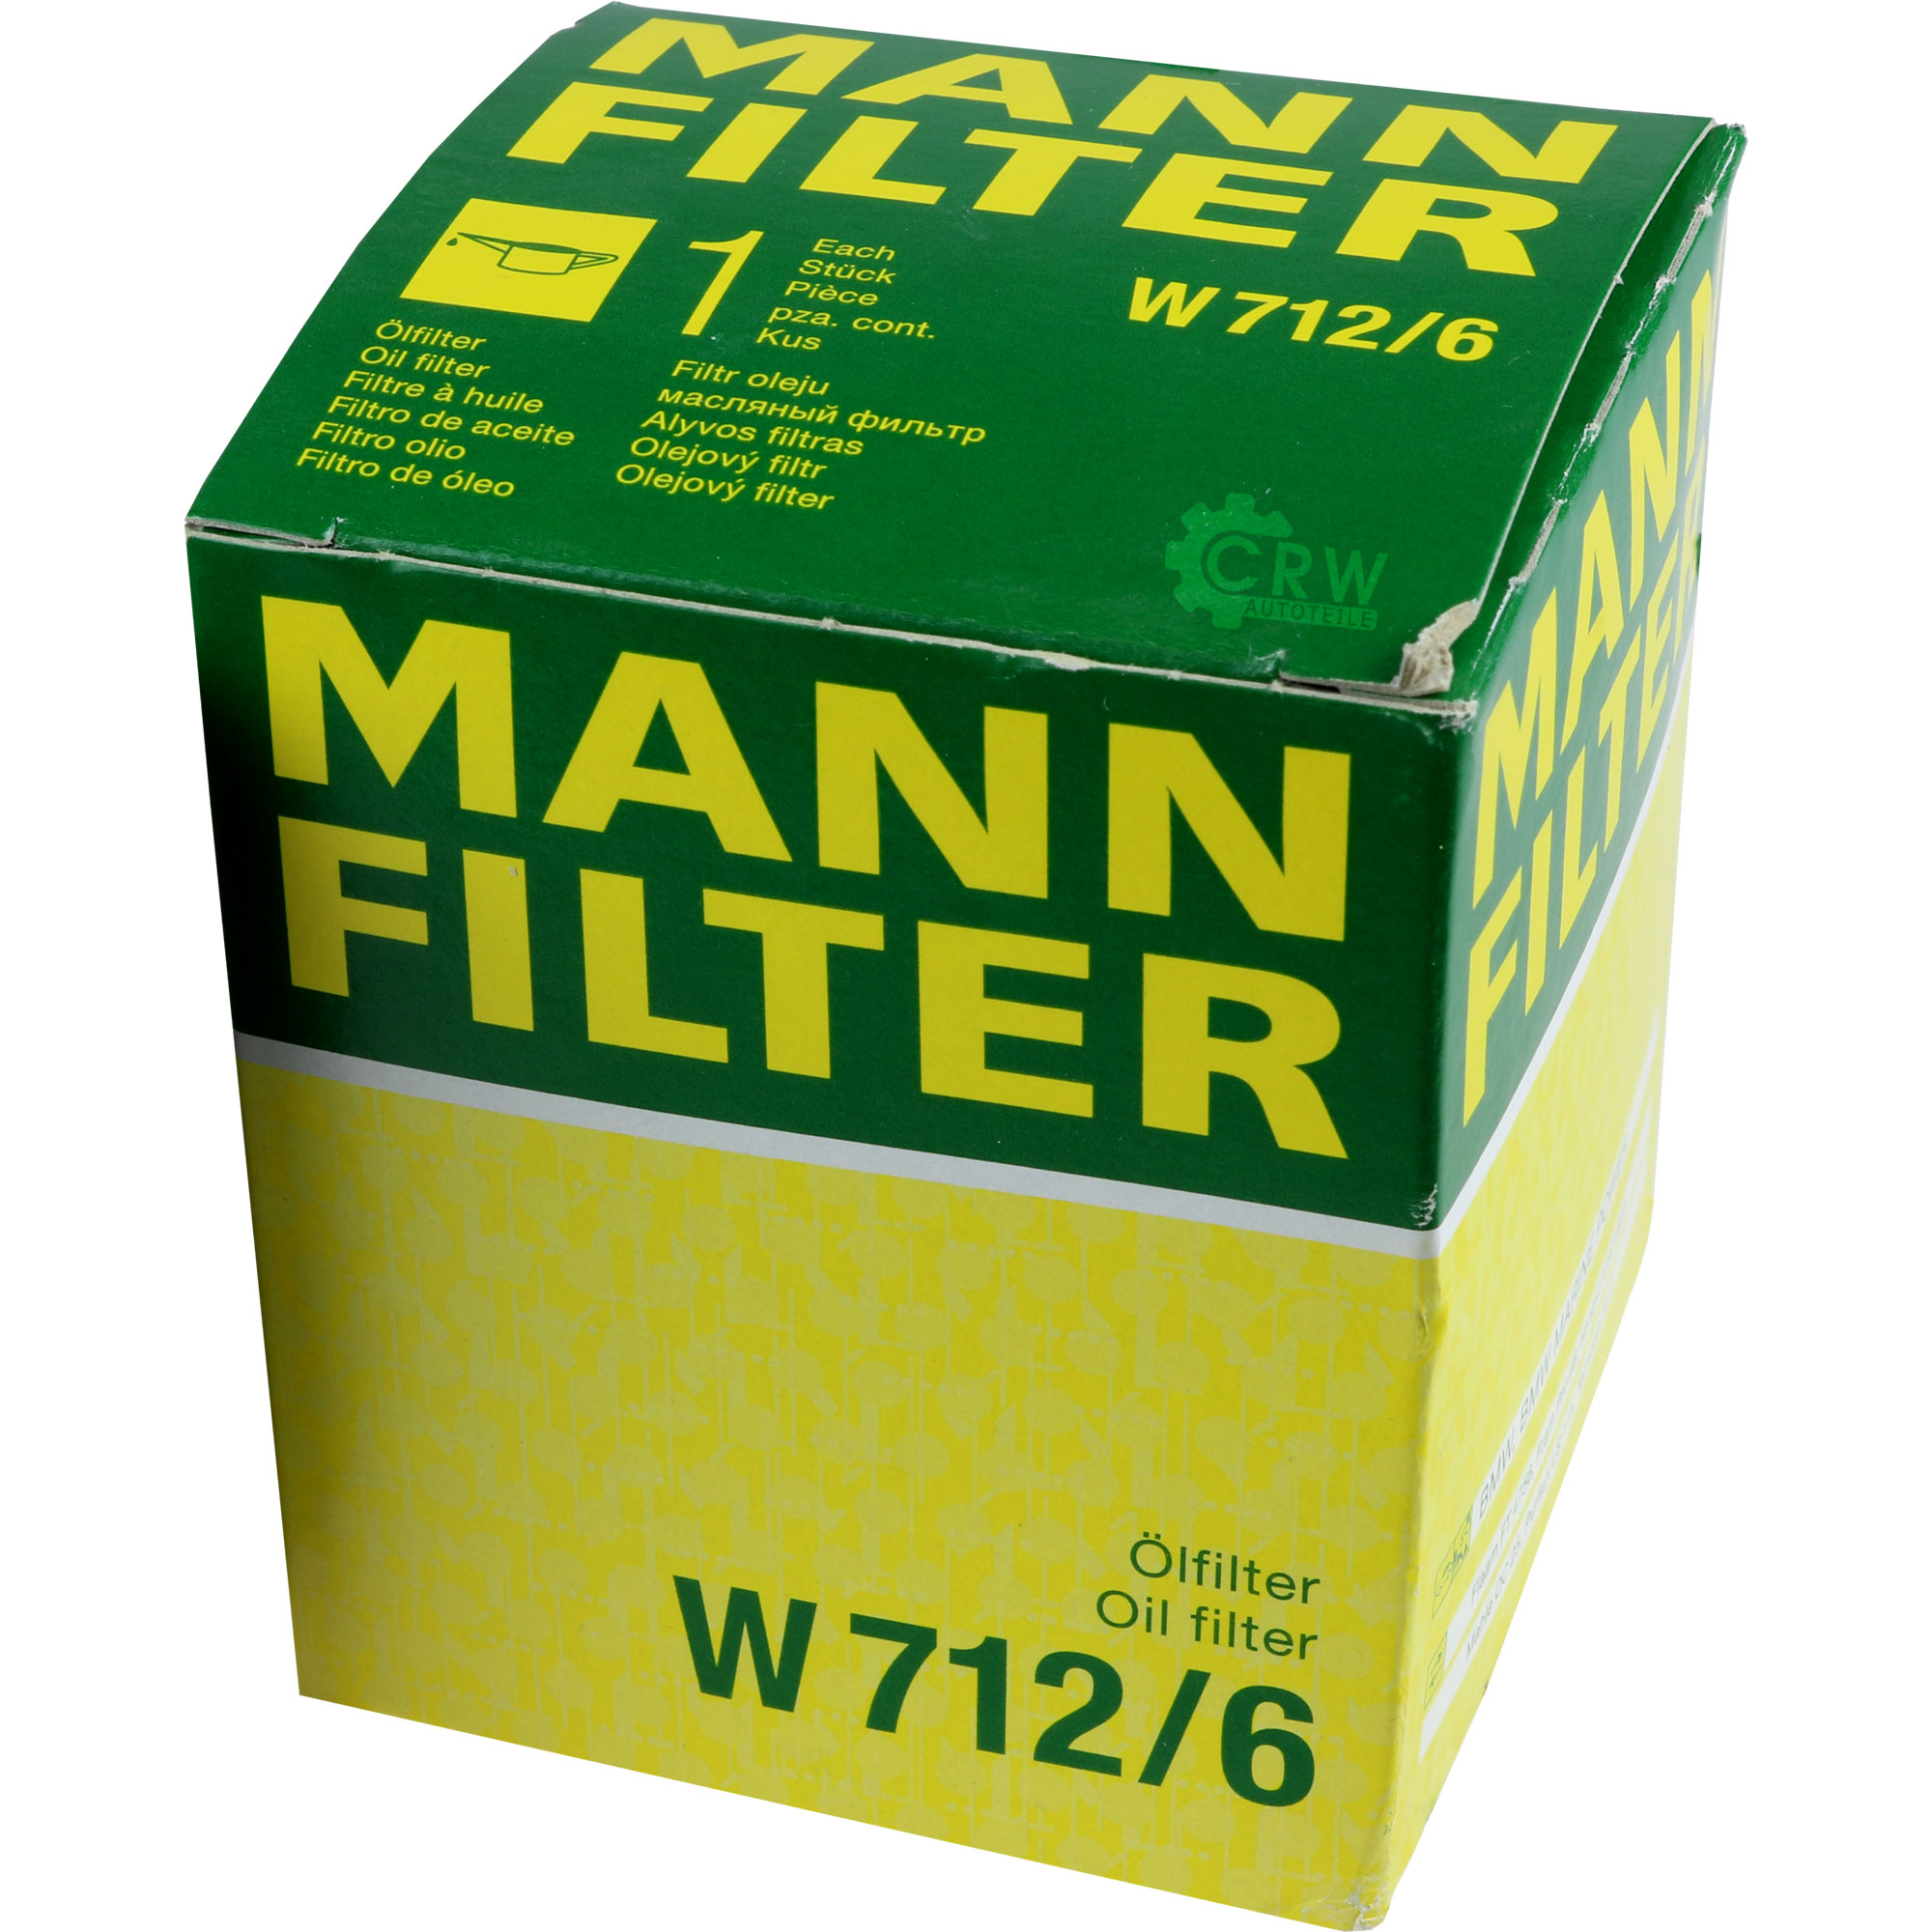 MANN-FILTER Ölfilter W 712/6 Oil Filter